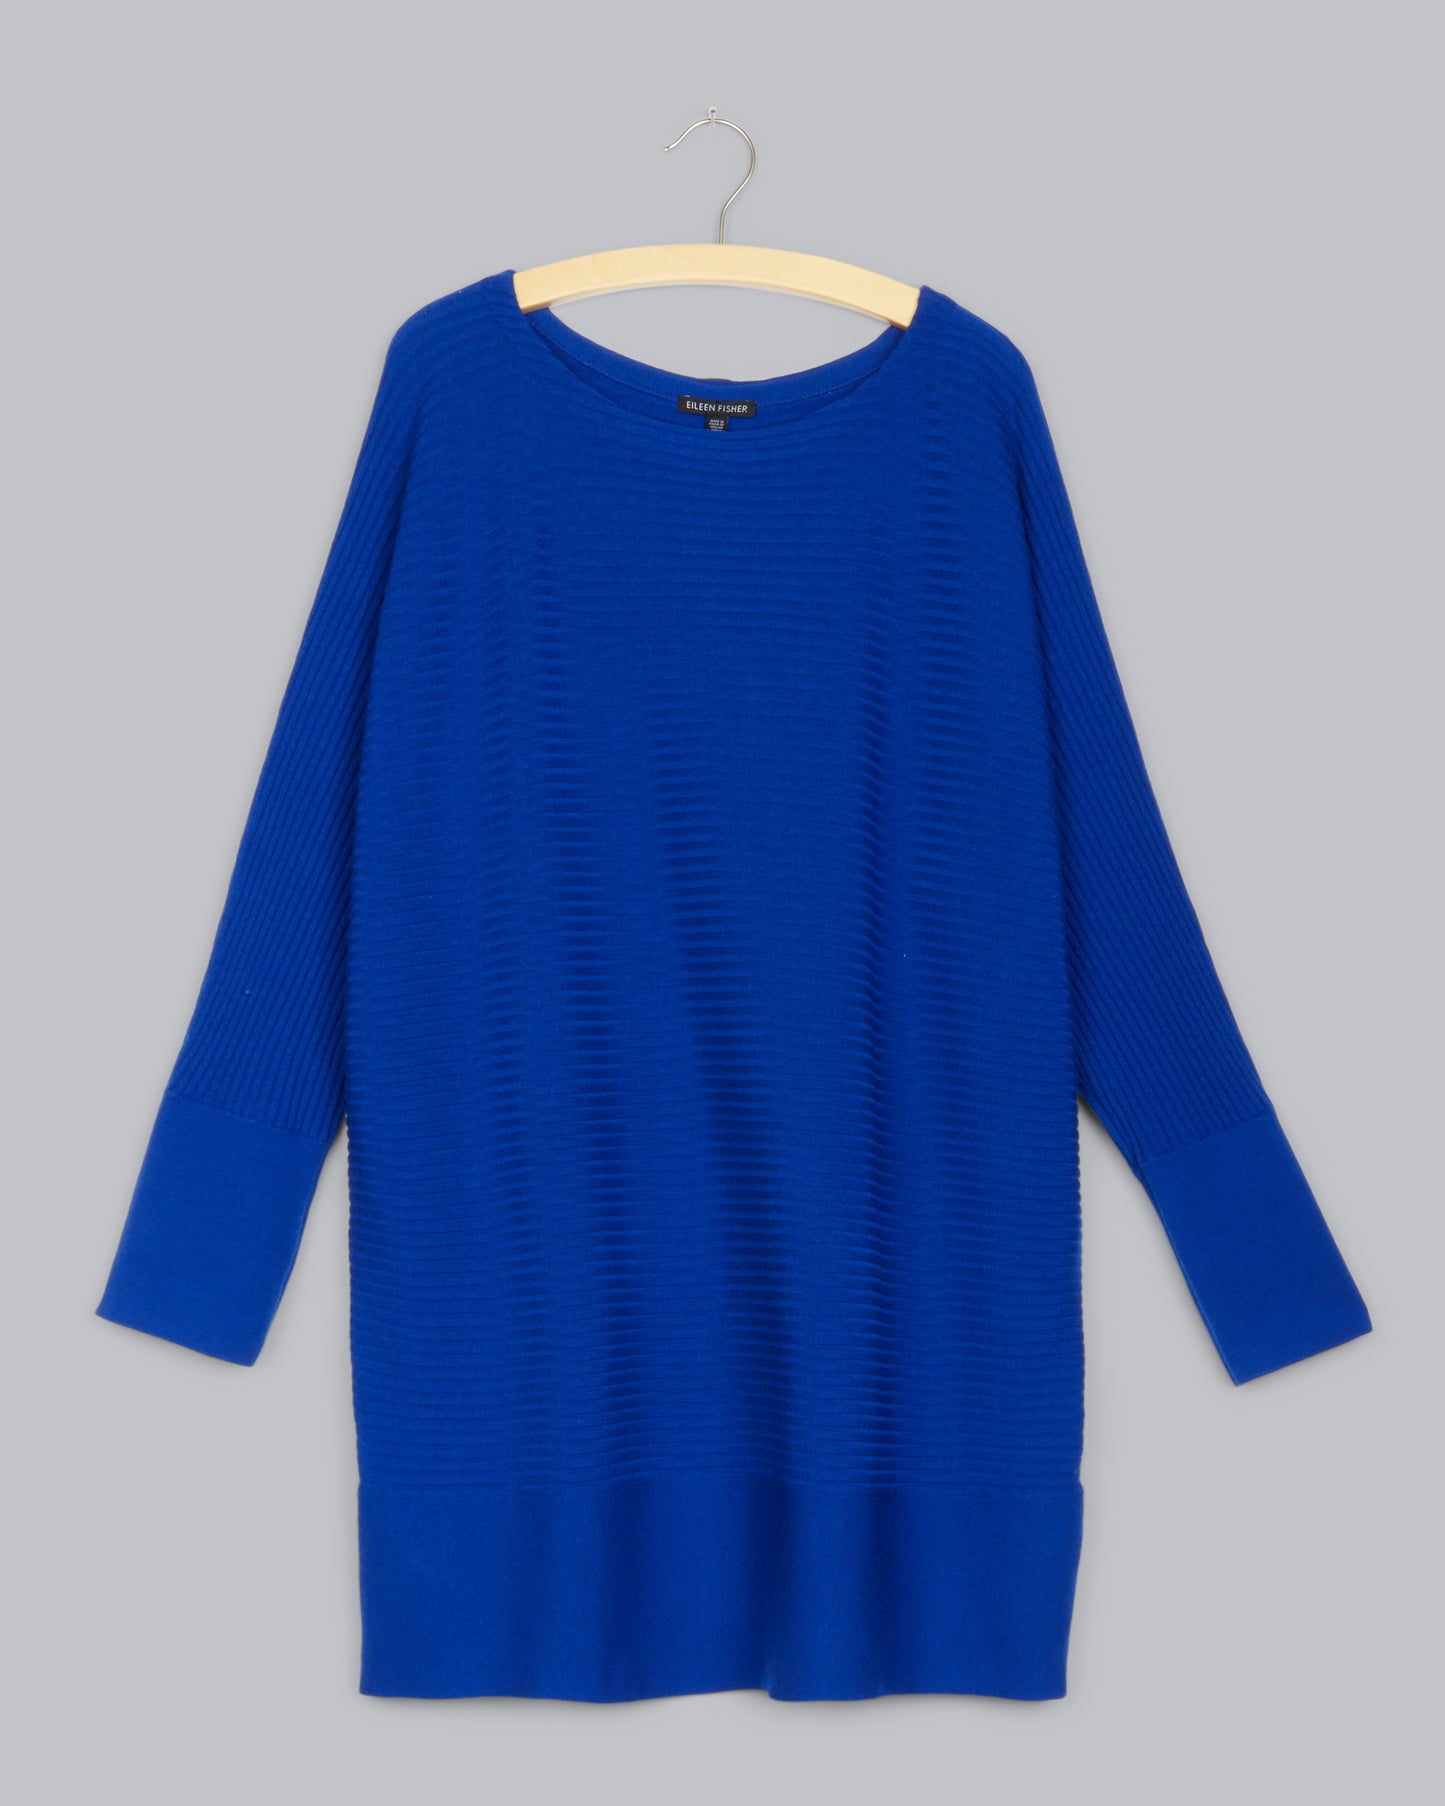 Luxe Merino Stretch Pullover